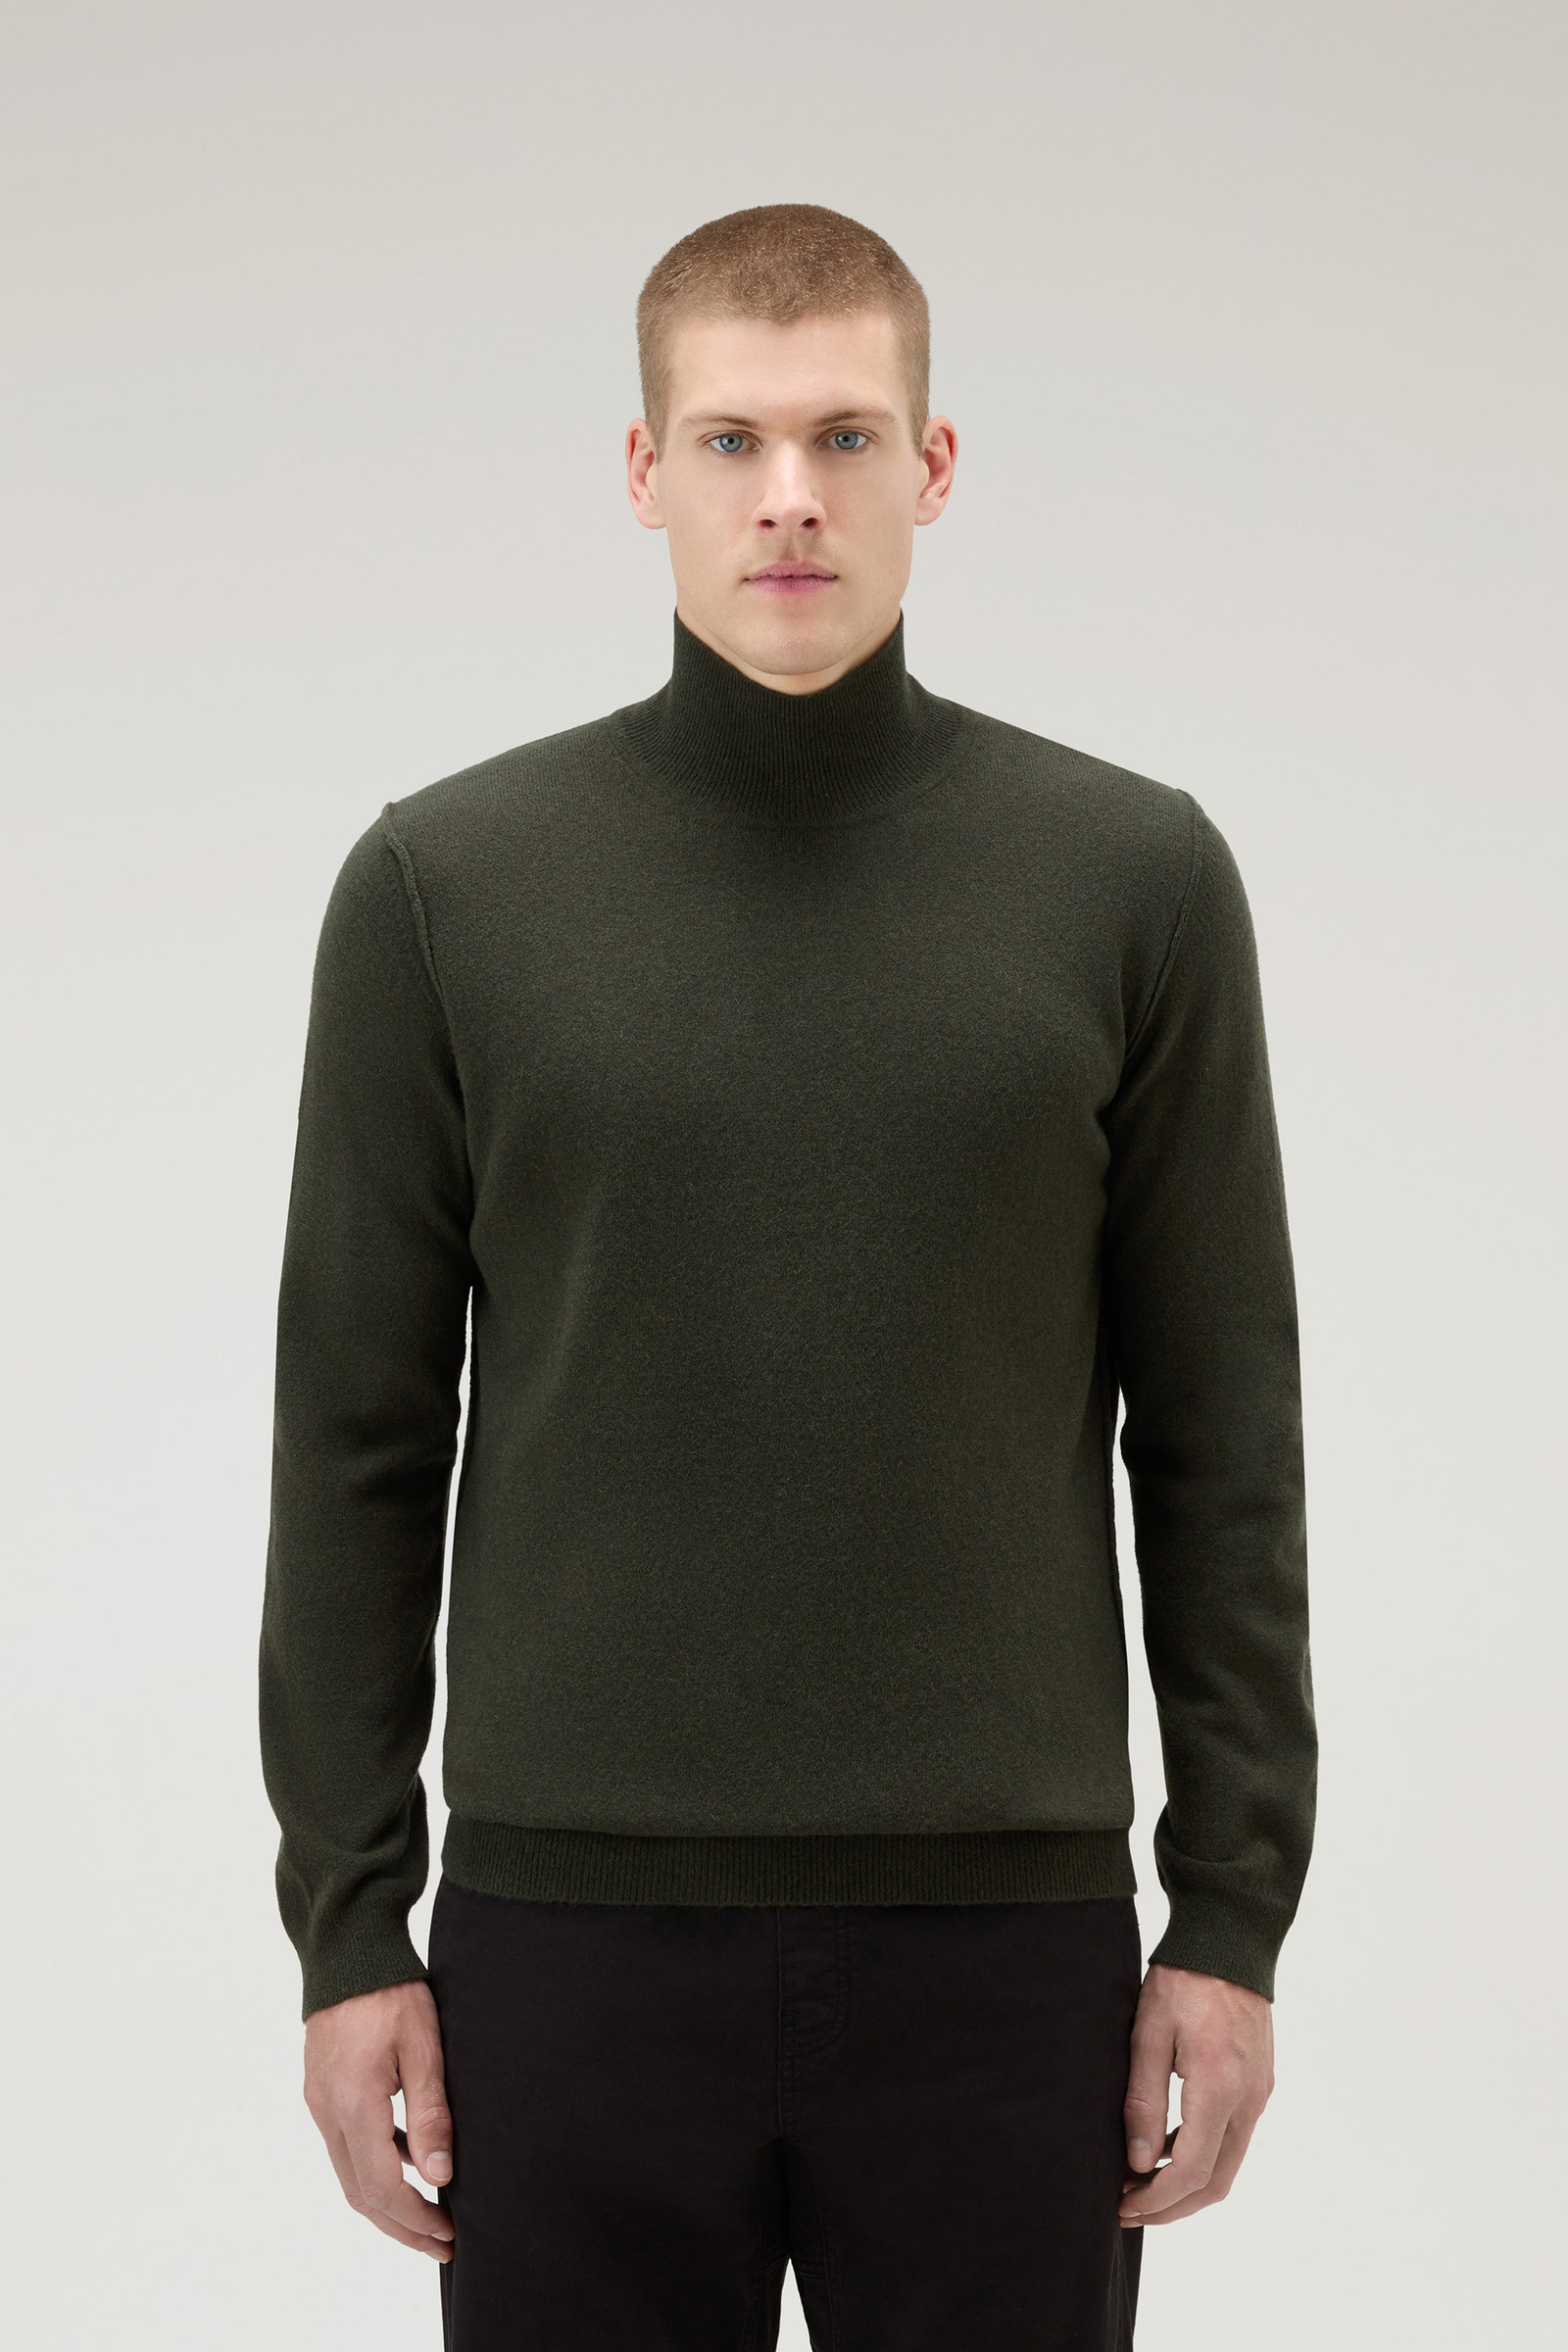 Men's Turtleneck Sweater in Merino Wool Blend Green | Woolrich USA